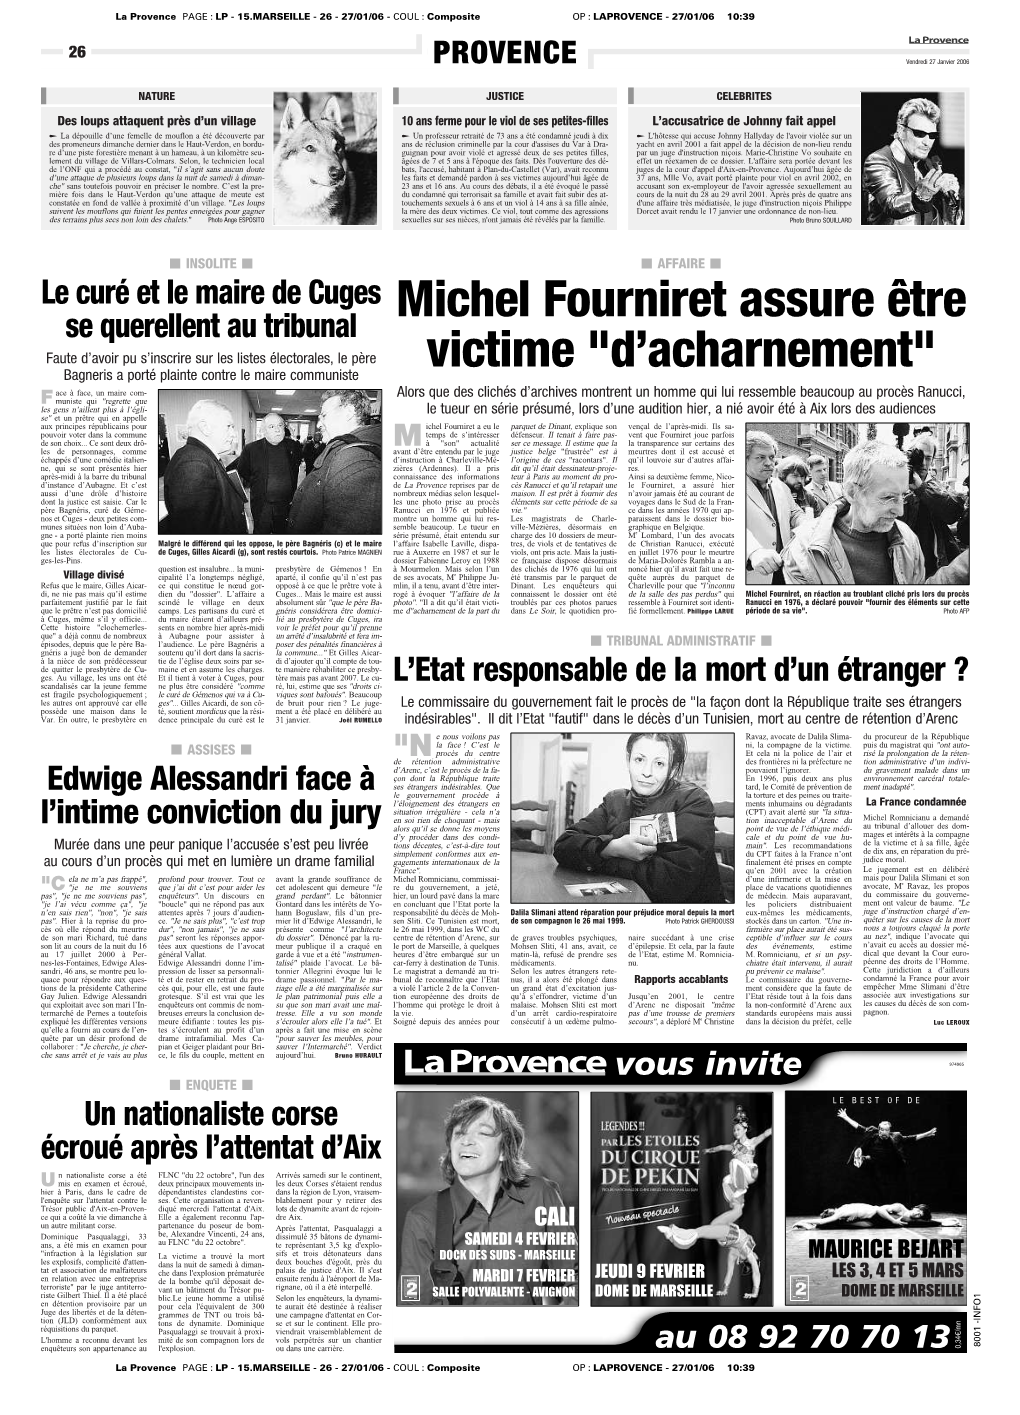 Michel Fourniret Assure Être Victime "D'acharnement"